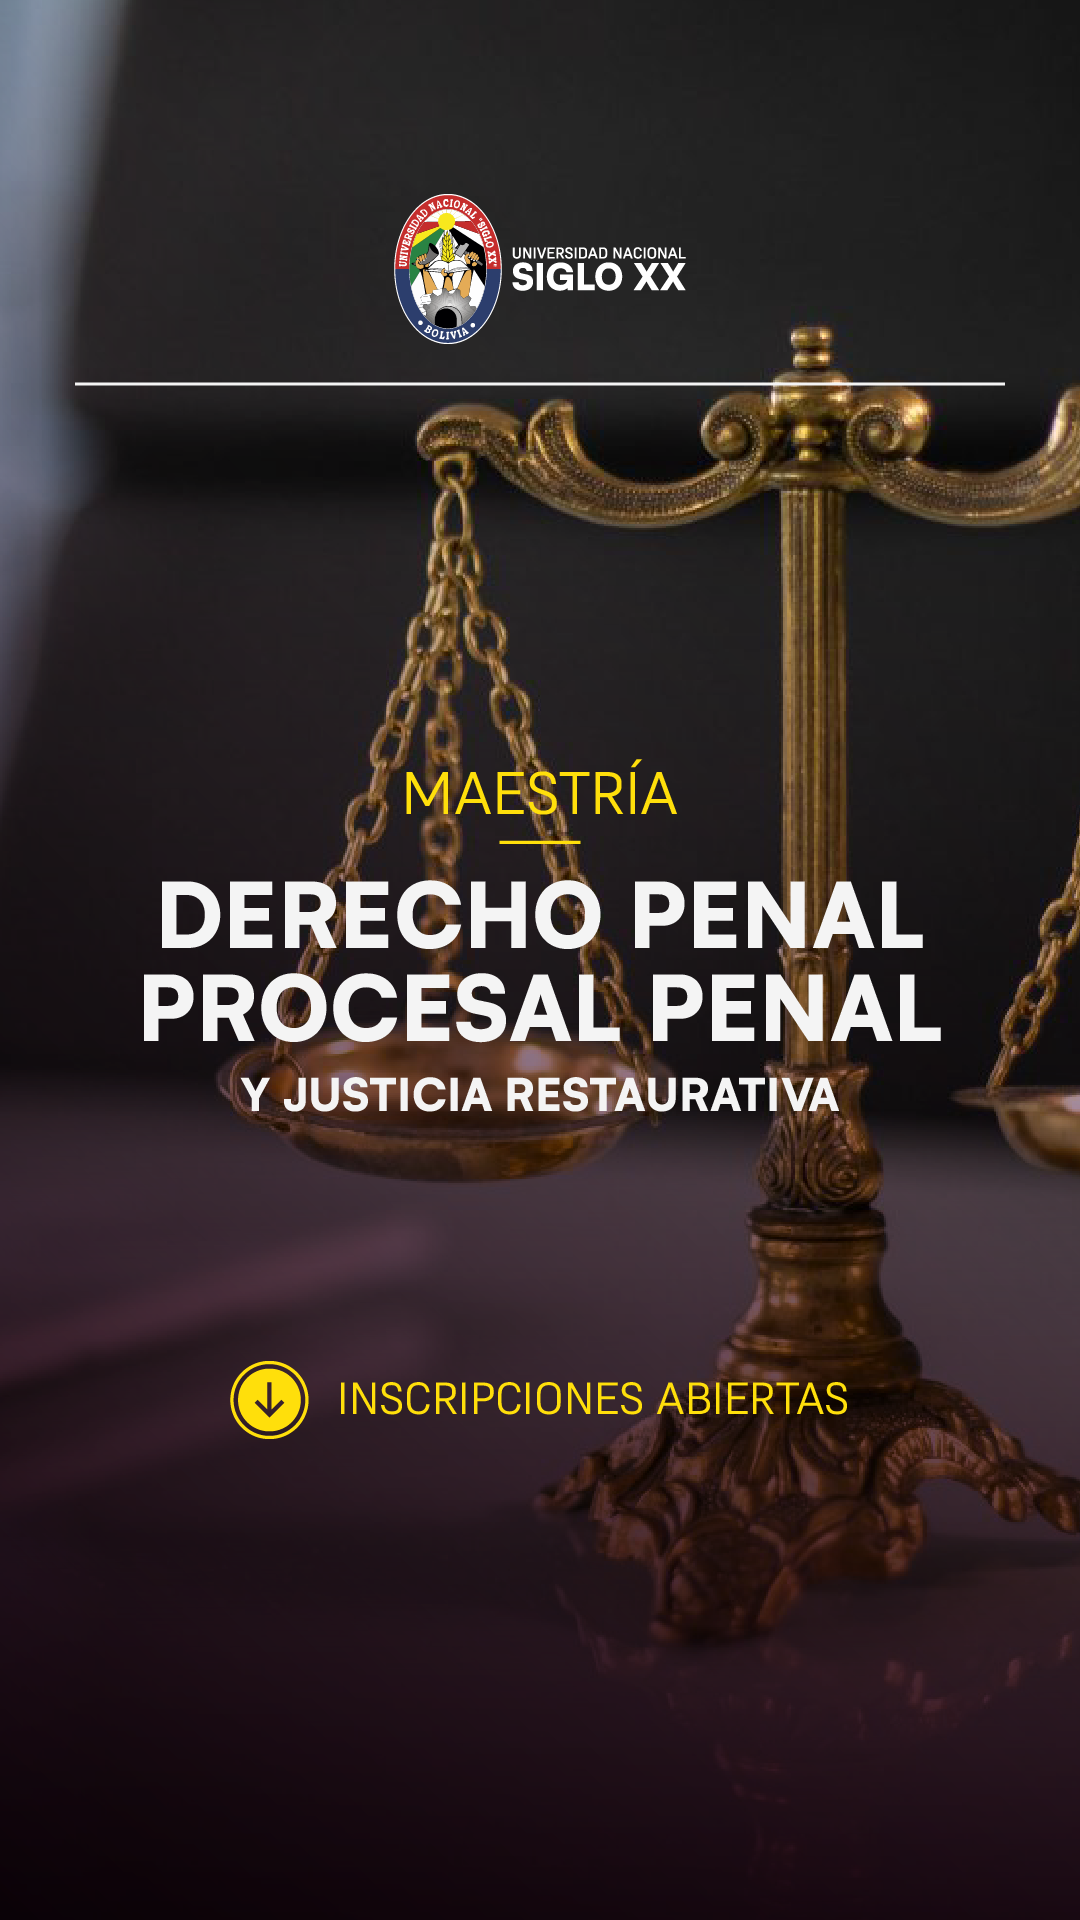 Maestría MAESTRÍA EN DERECHO PENAL, PROCESAL PENAL Y JUSTICIA RESTAURATIVA